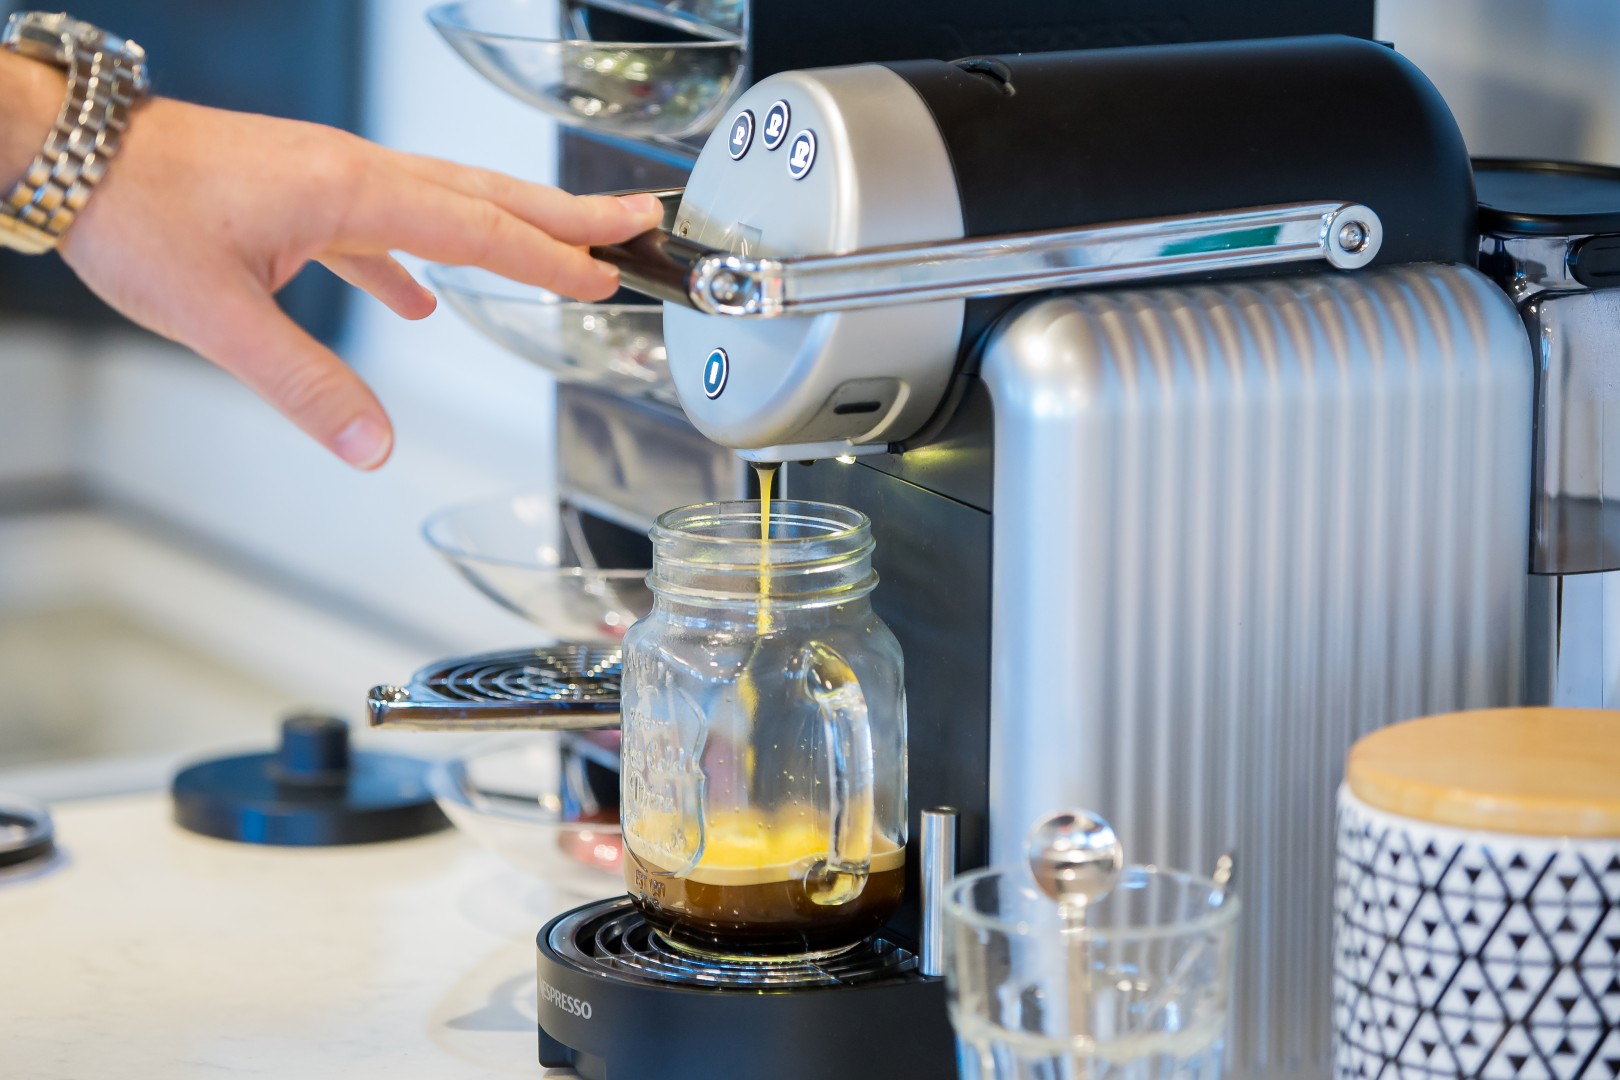 זיניוס, מכונת קפה לעסקים  (צילום: איתן וכסמן) (צילום: איתן וכסמן)